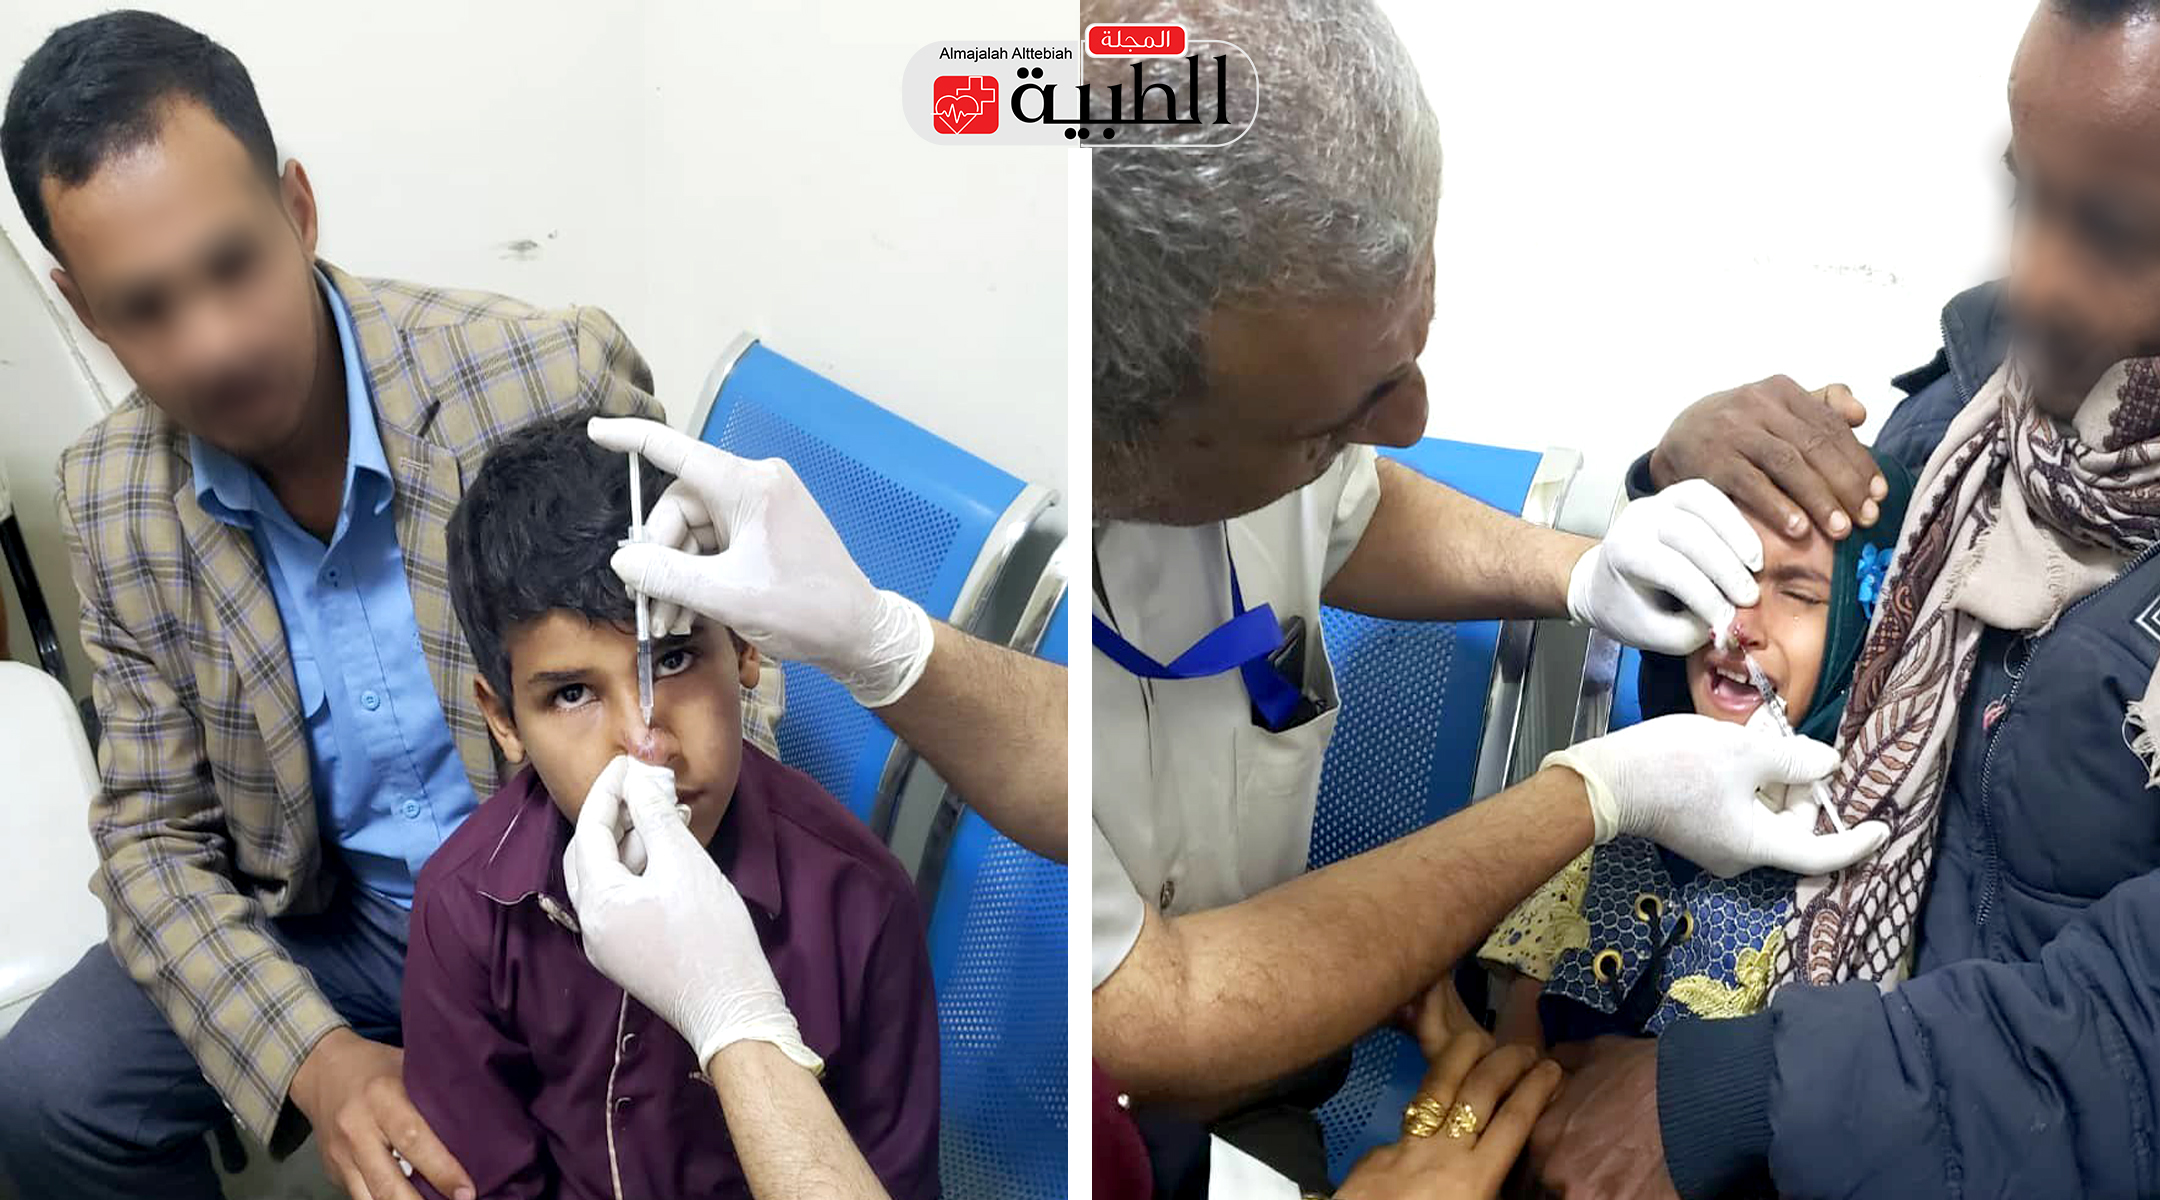 هام: اليمنيون يواجهون مرضا خطيرا بدون دواء والصحة العالمية تحذر من انتشاره